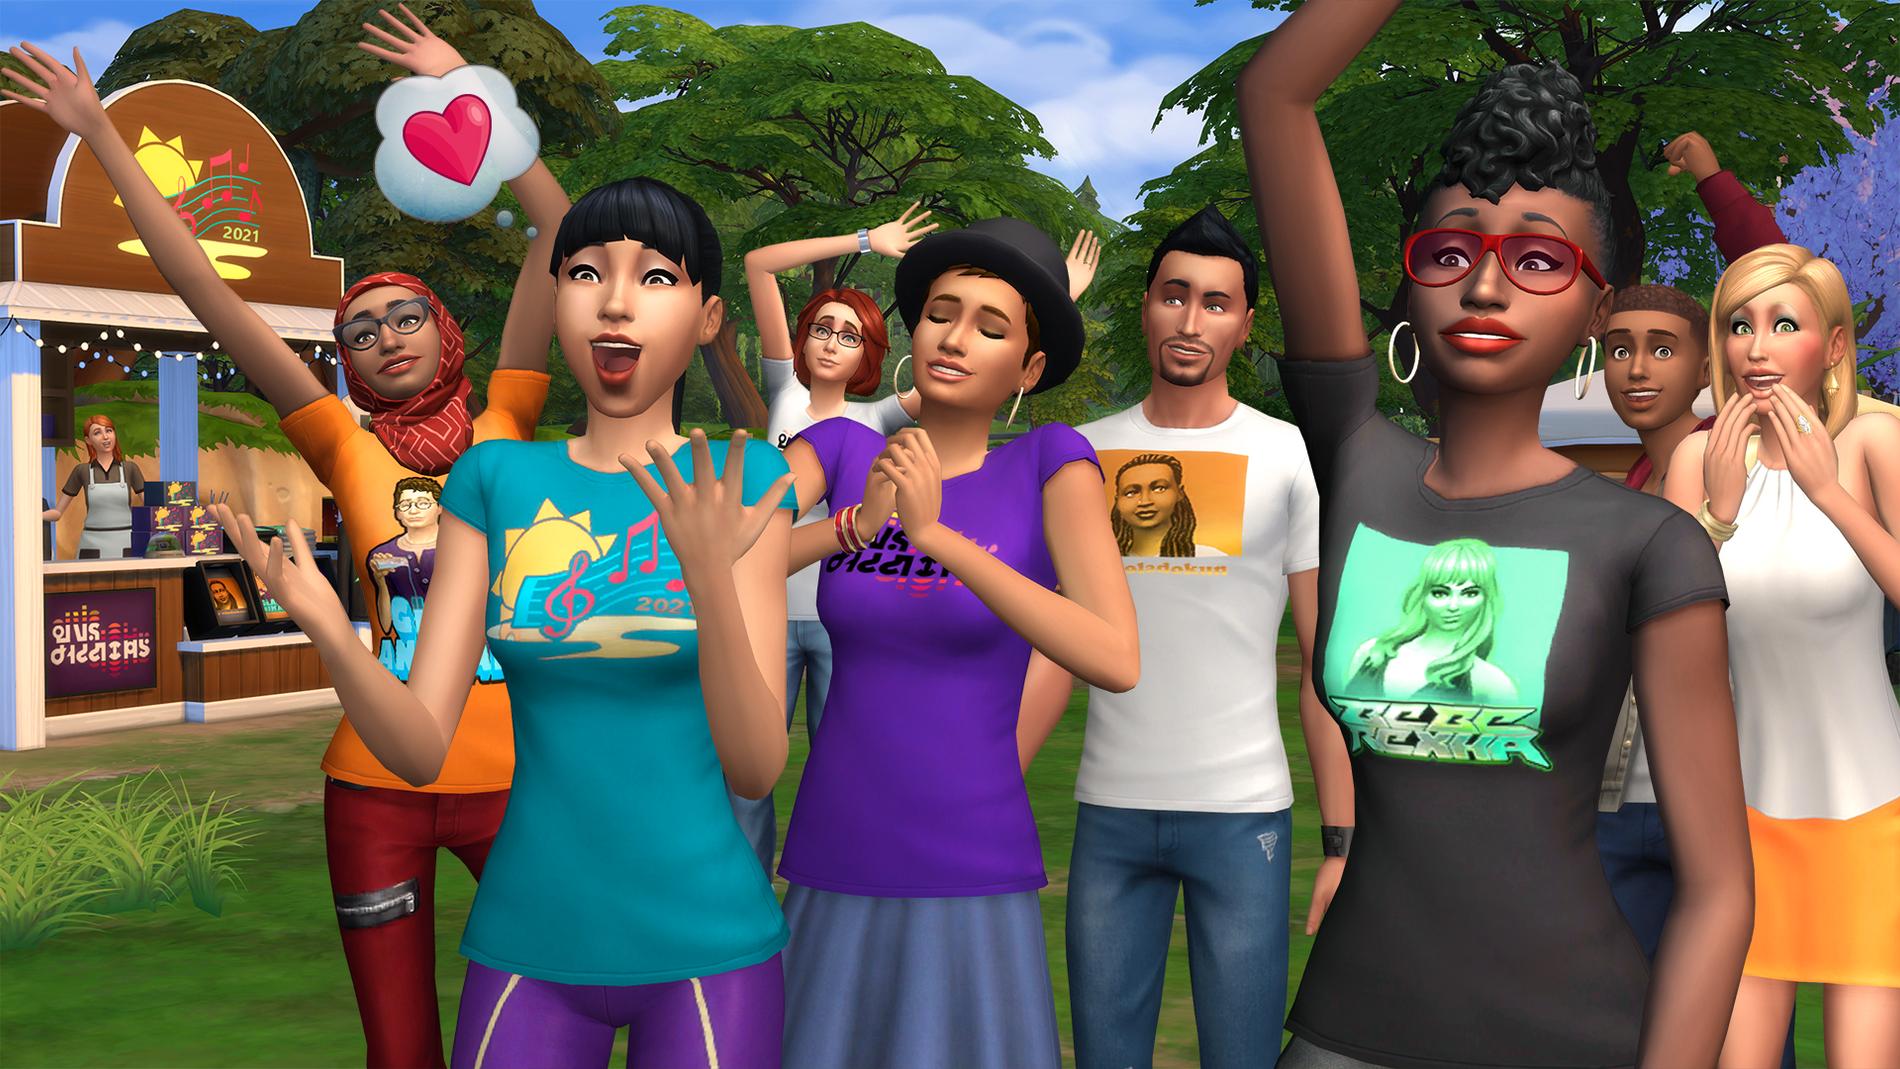 Skärmbild från ”The Sims 4”. Pressbild.